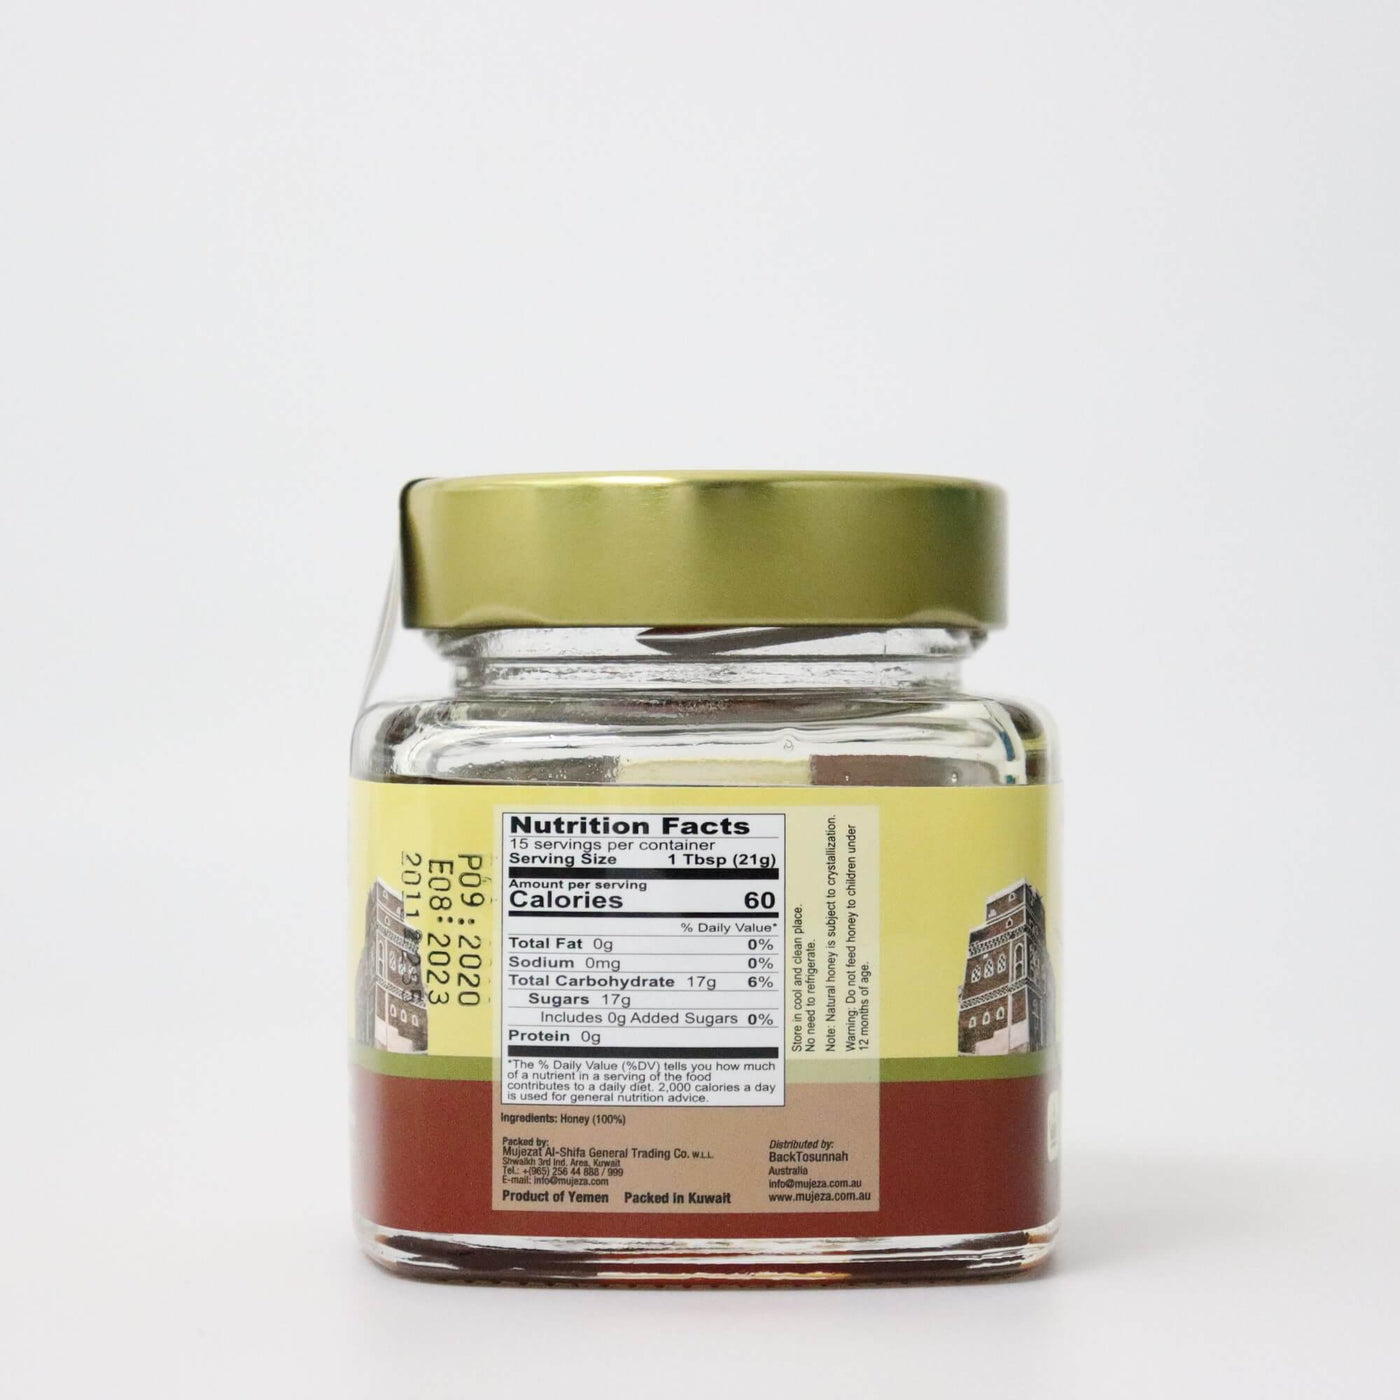 Mujeza Royal Sidr Honey 300g